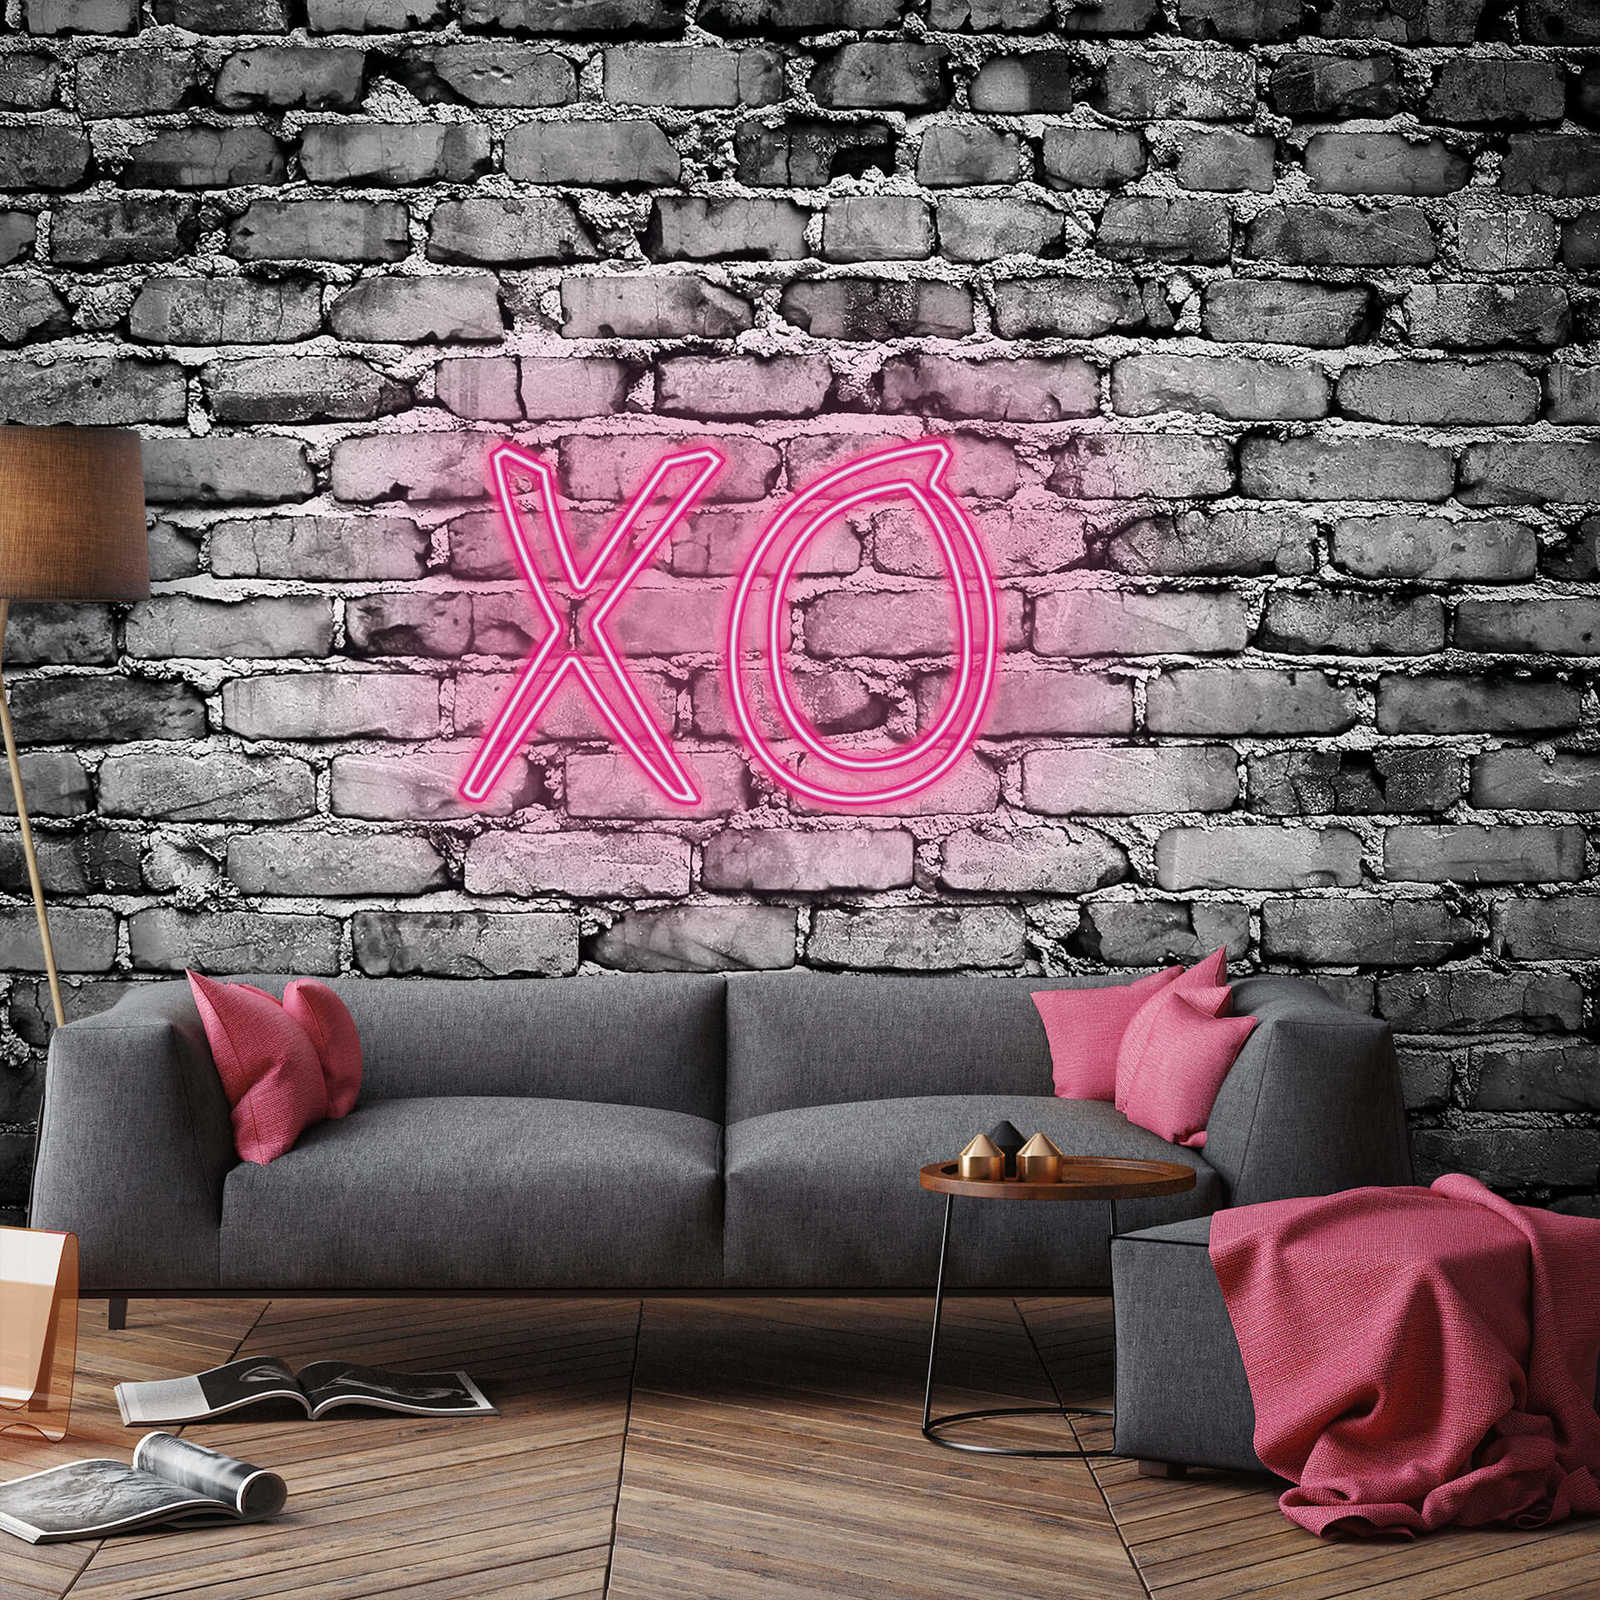             Muurschildering met verlichte letters XO
        